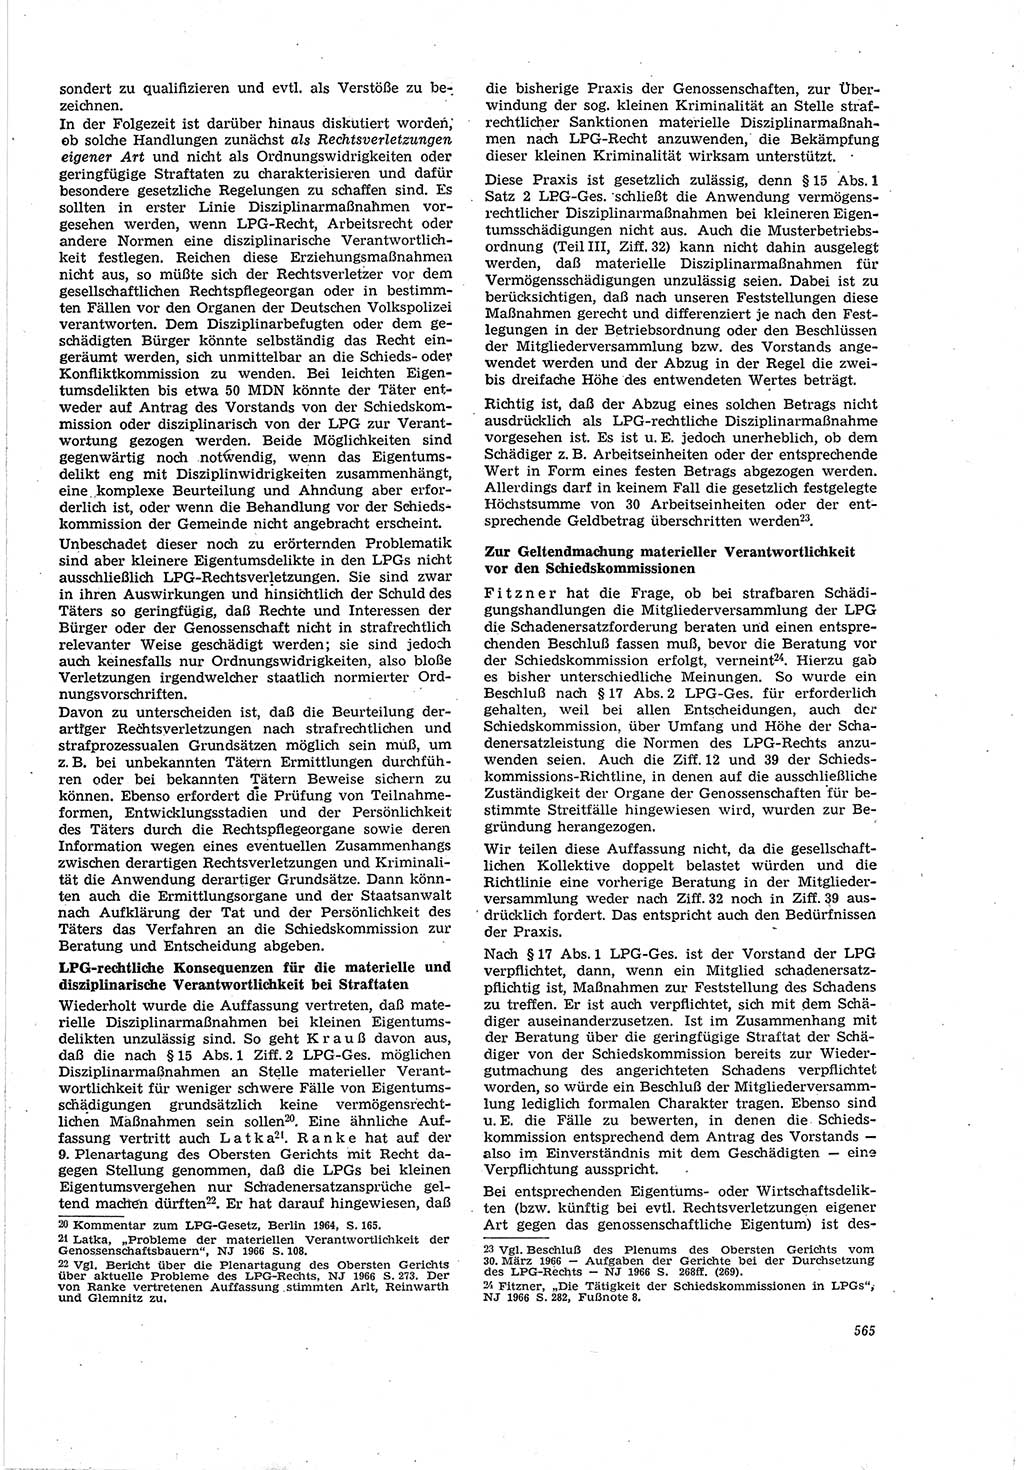 Neue Justiz (NJ), Zeitschrift für Recht und Rechtswissenschaft [Deutsche Demokratische Republik (DDR)], 20. Jahrgang 1966, Seite 565 (NJ DDR 1966, S. 565)